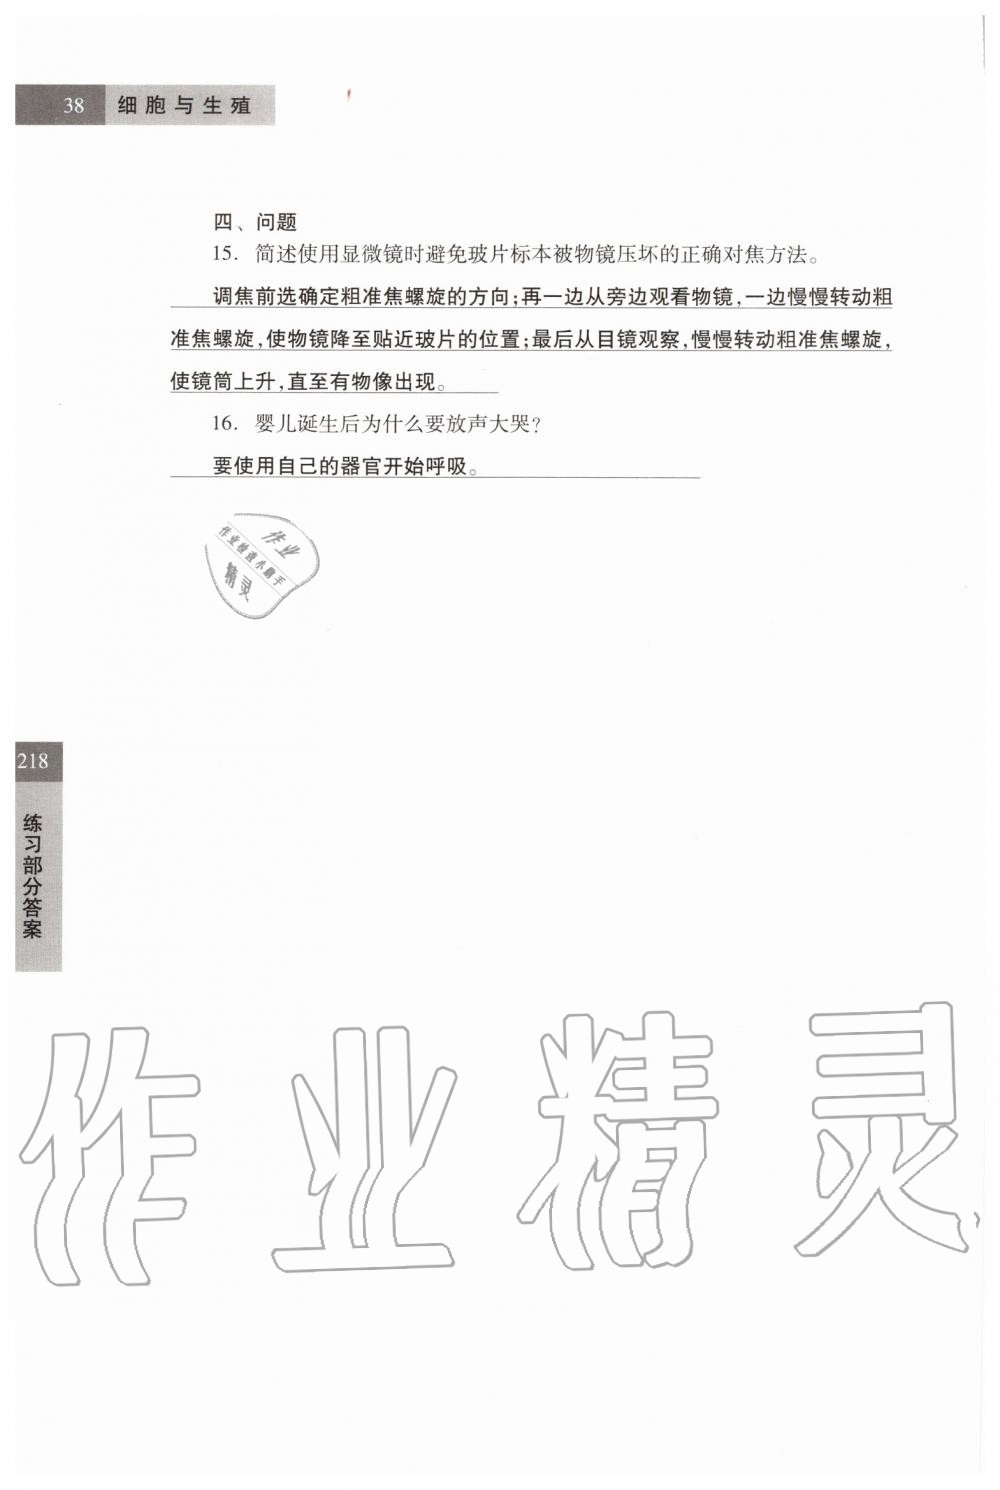 2019年科学练习部分六年级第一学期牛津上海版 第38页